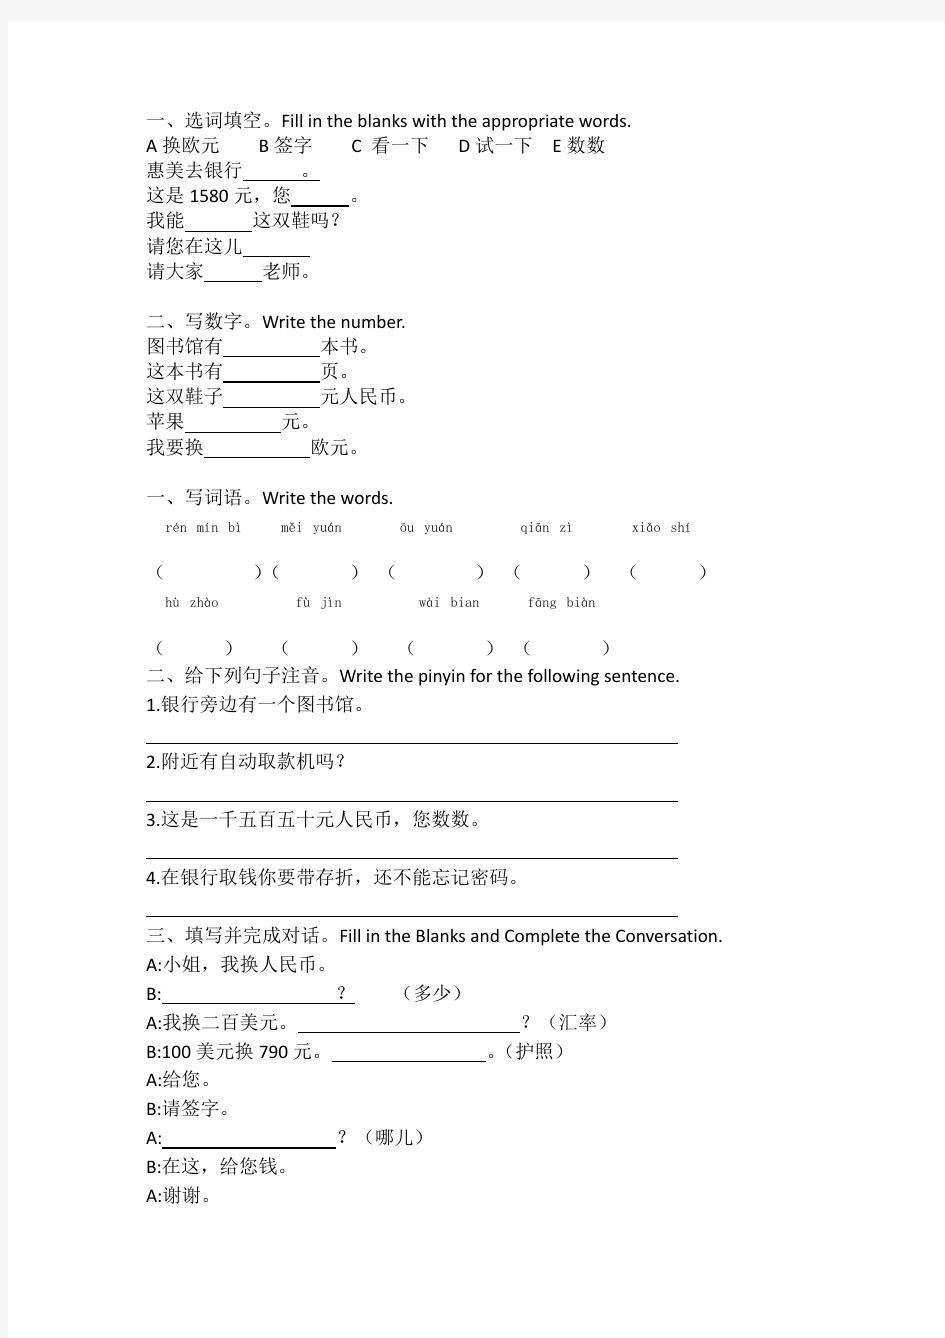 体验汉语基础教程上14课